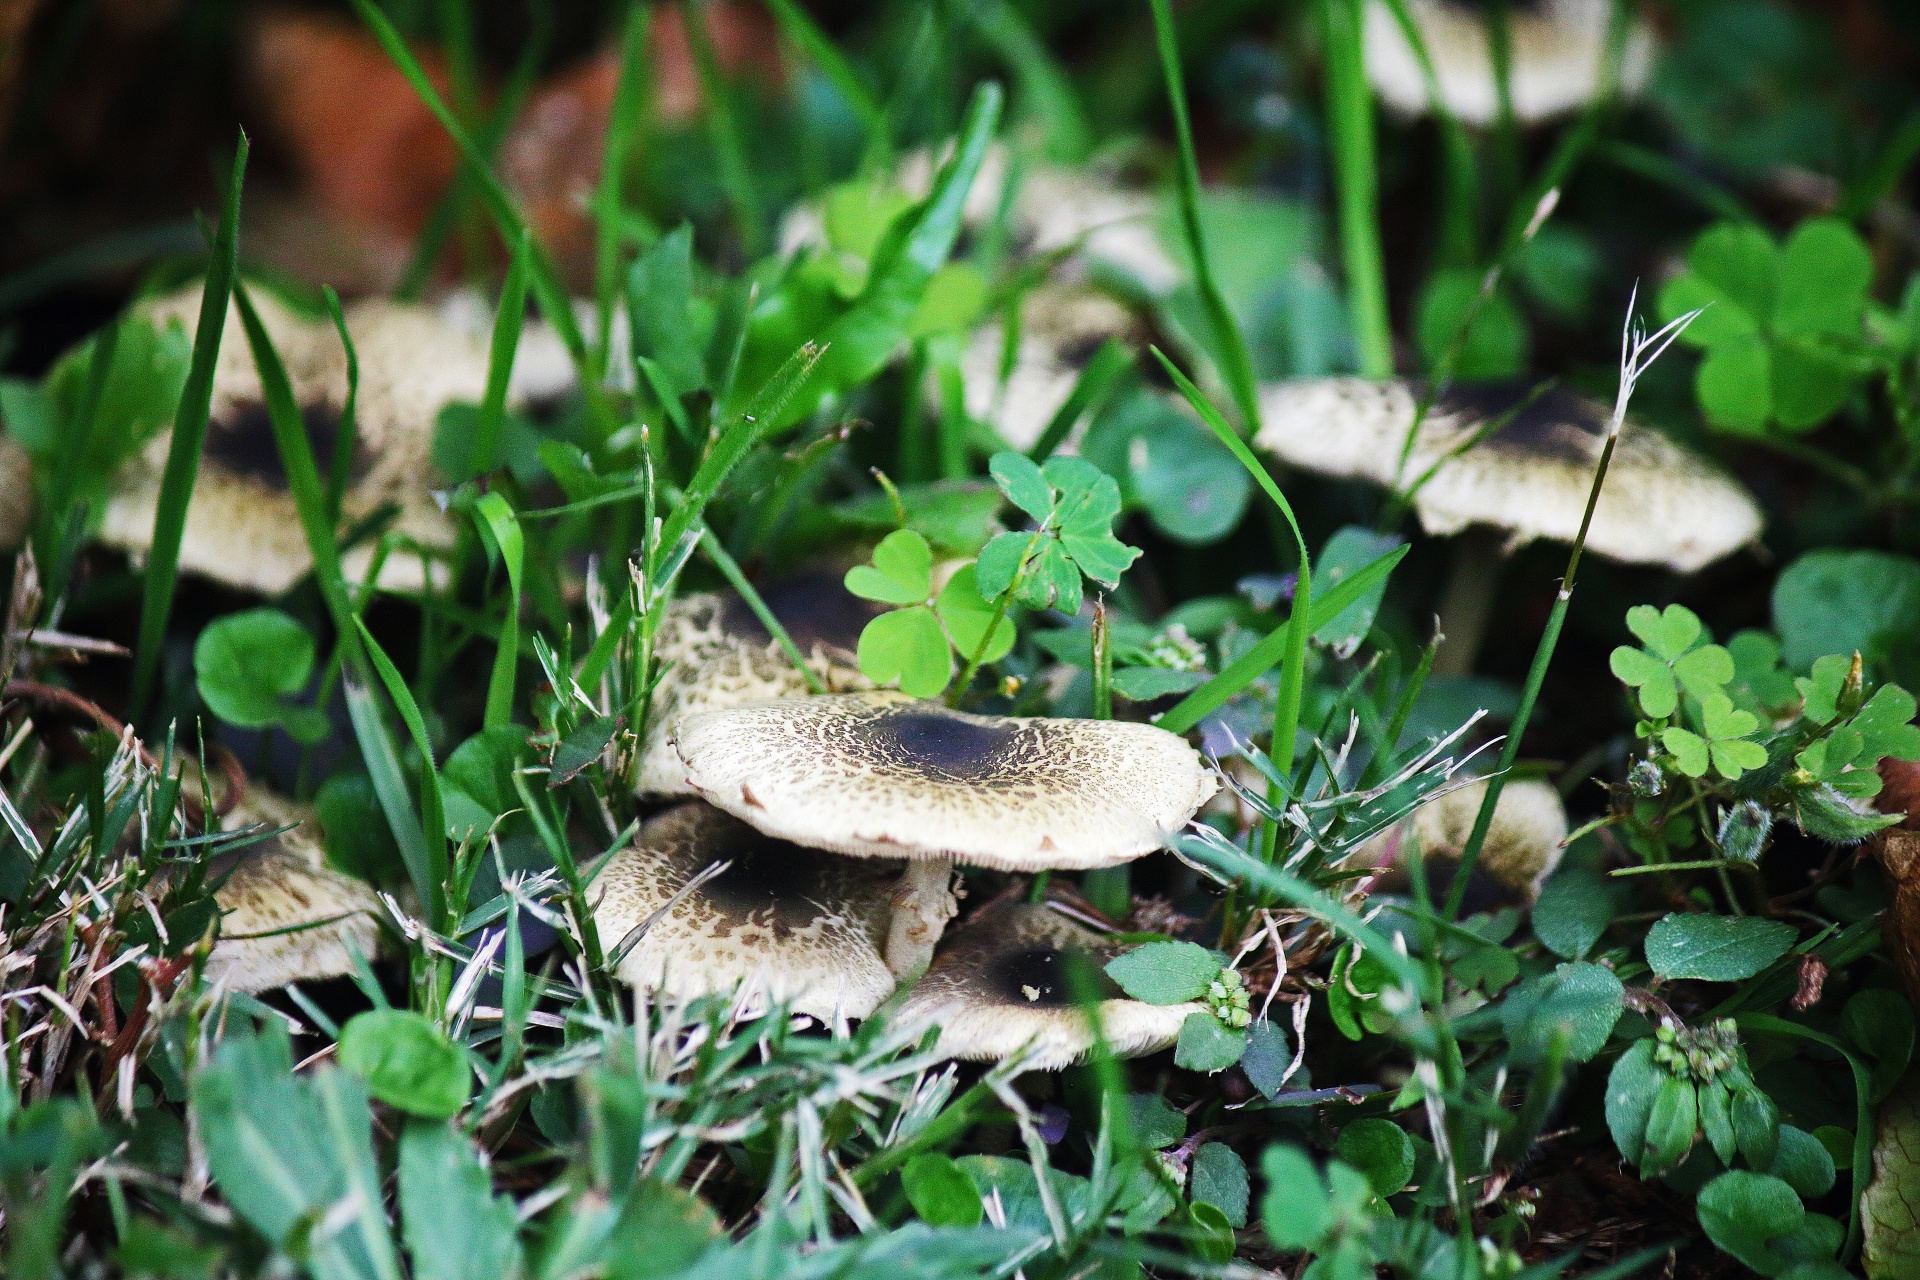 Mushrooms Growing On Unkempt Lawn